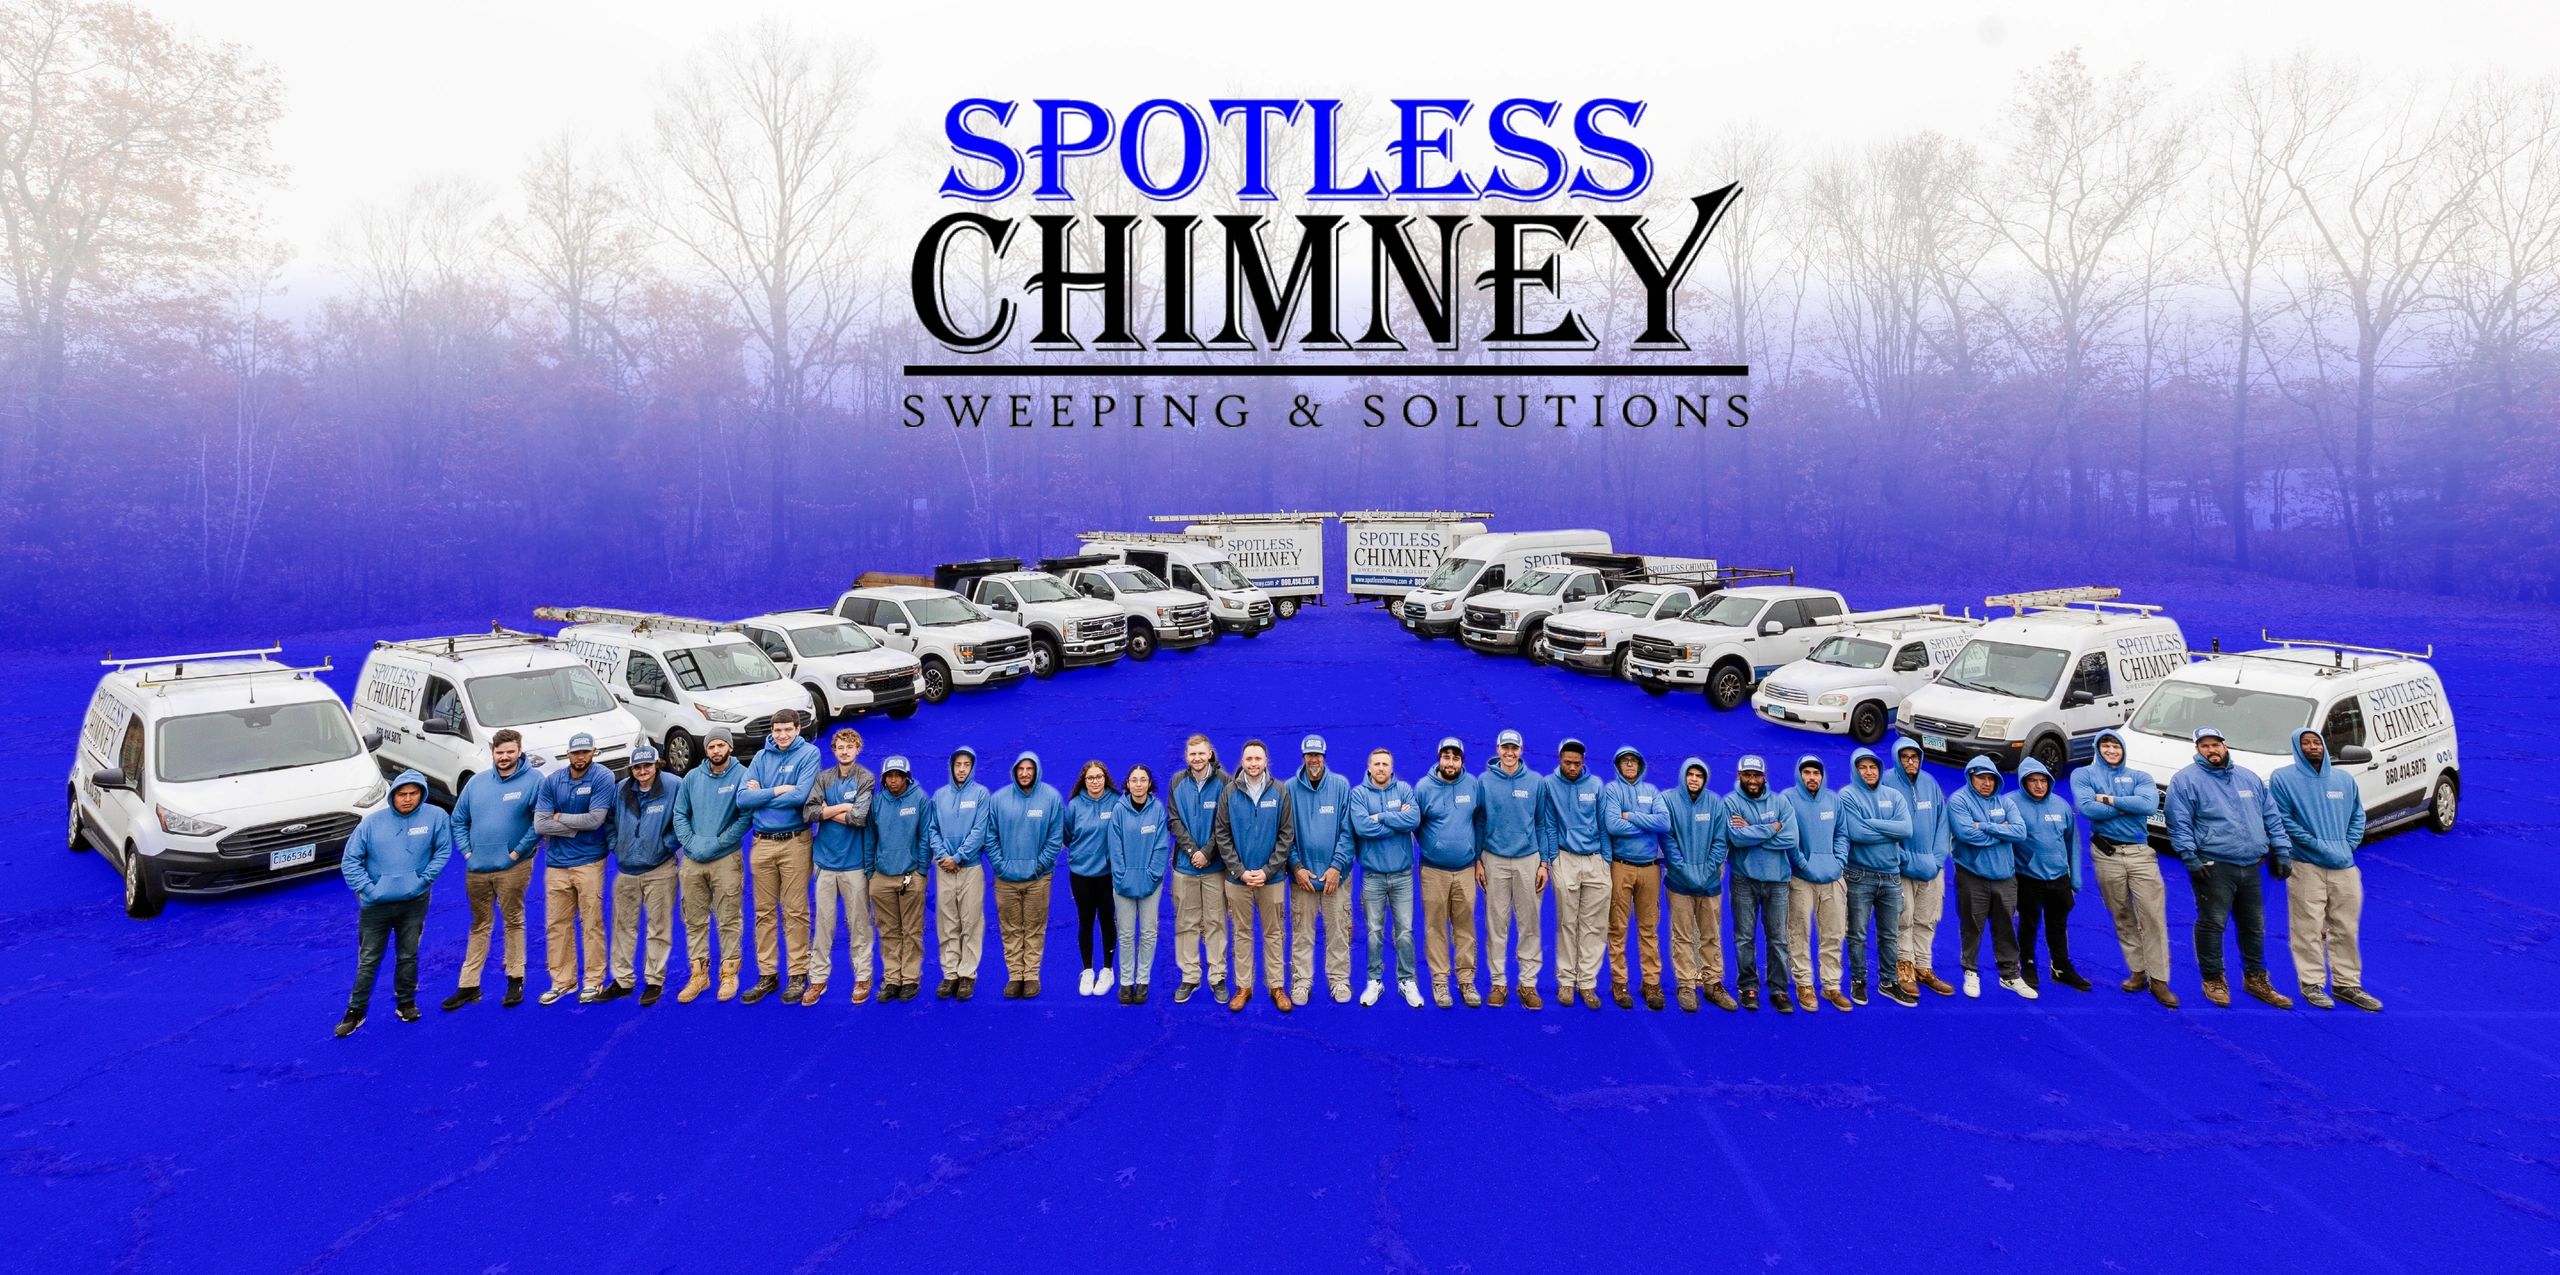 Chimney Repair - Spotless chimney sweepings & solutions